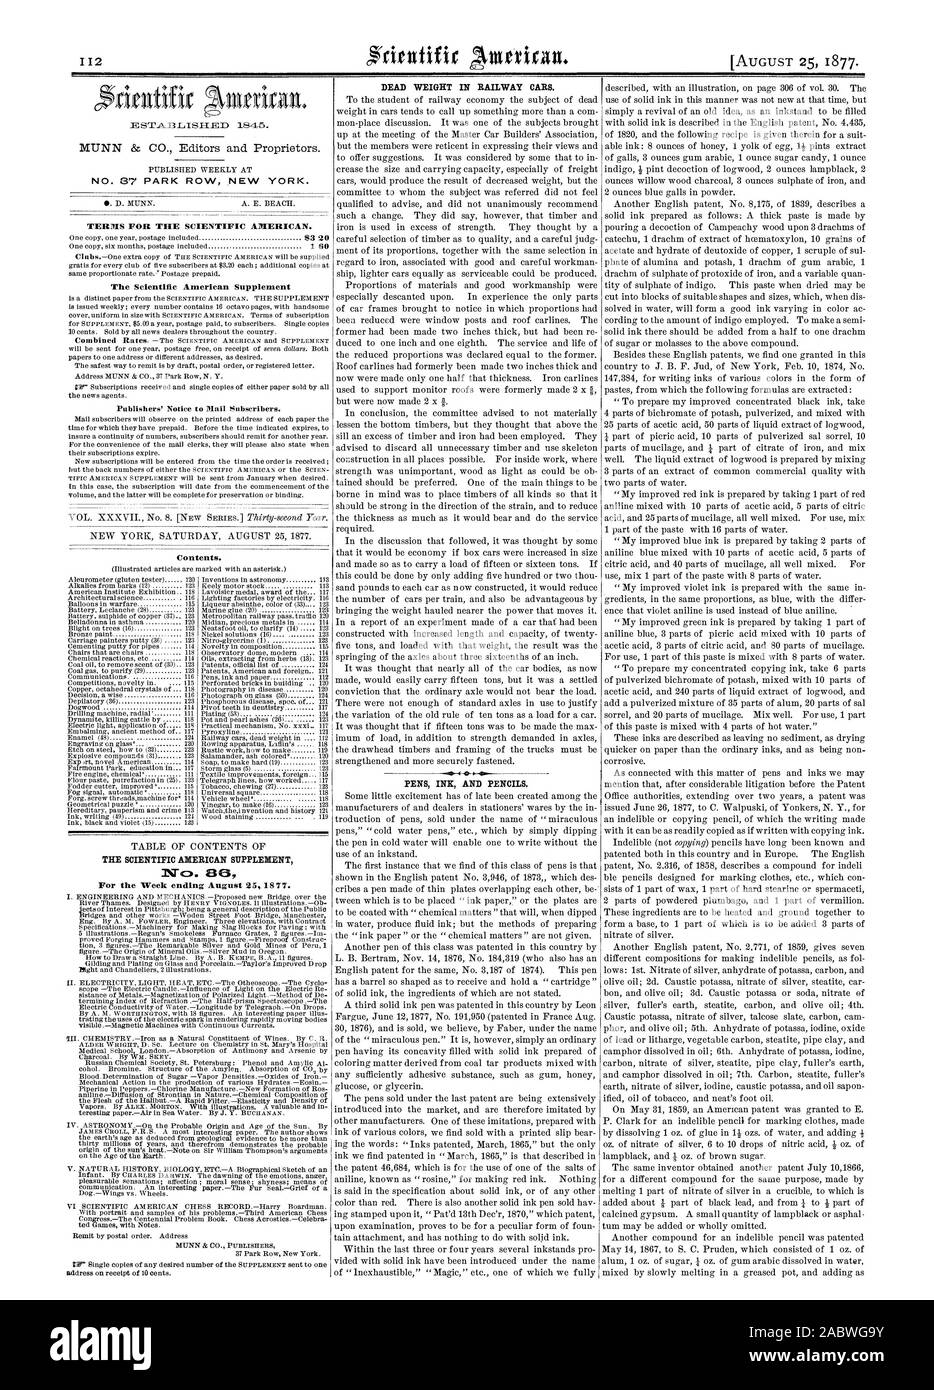 Nr. 37 PARK ROW NEW YORK. 1 S der Scientific American Supplement Publishers' Ankündigung E-Mail Abonnenten. Inhalt. Nr. B für die Woche vom 25. August 1877 endet. Eigengewicht in Eisenbahnwaggons. Stifte Tinte und Kugelschreiber., 1877-08-25 Stockfoto